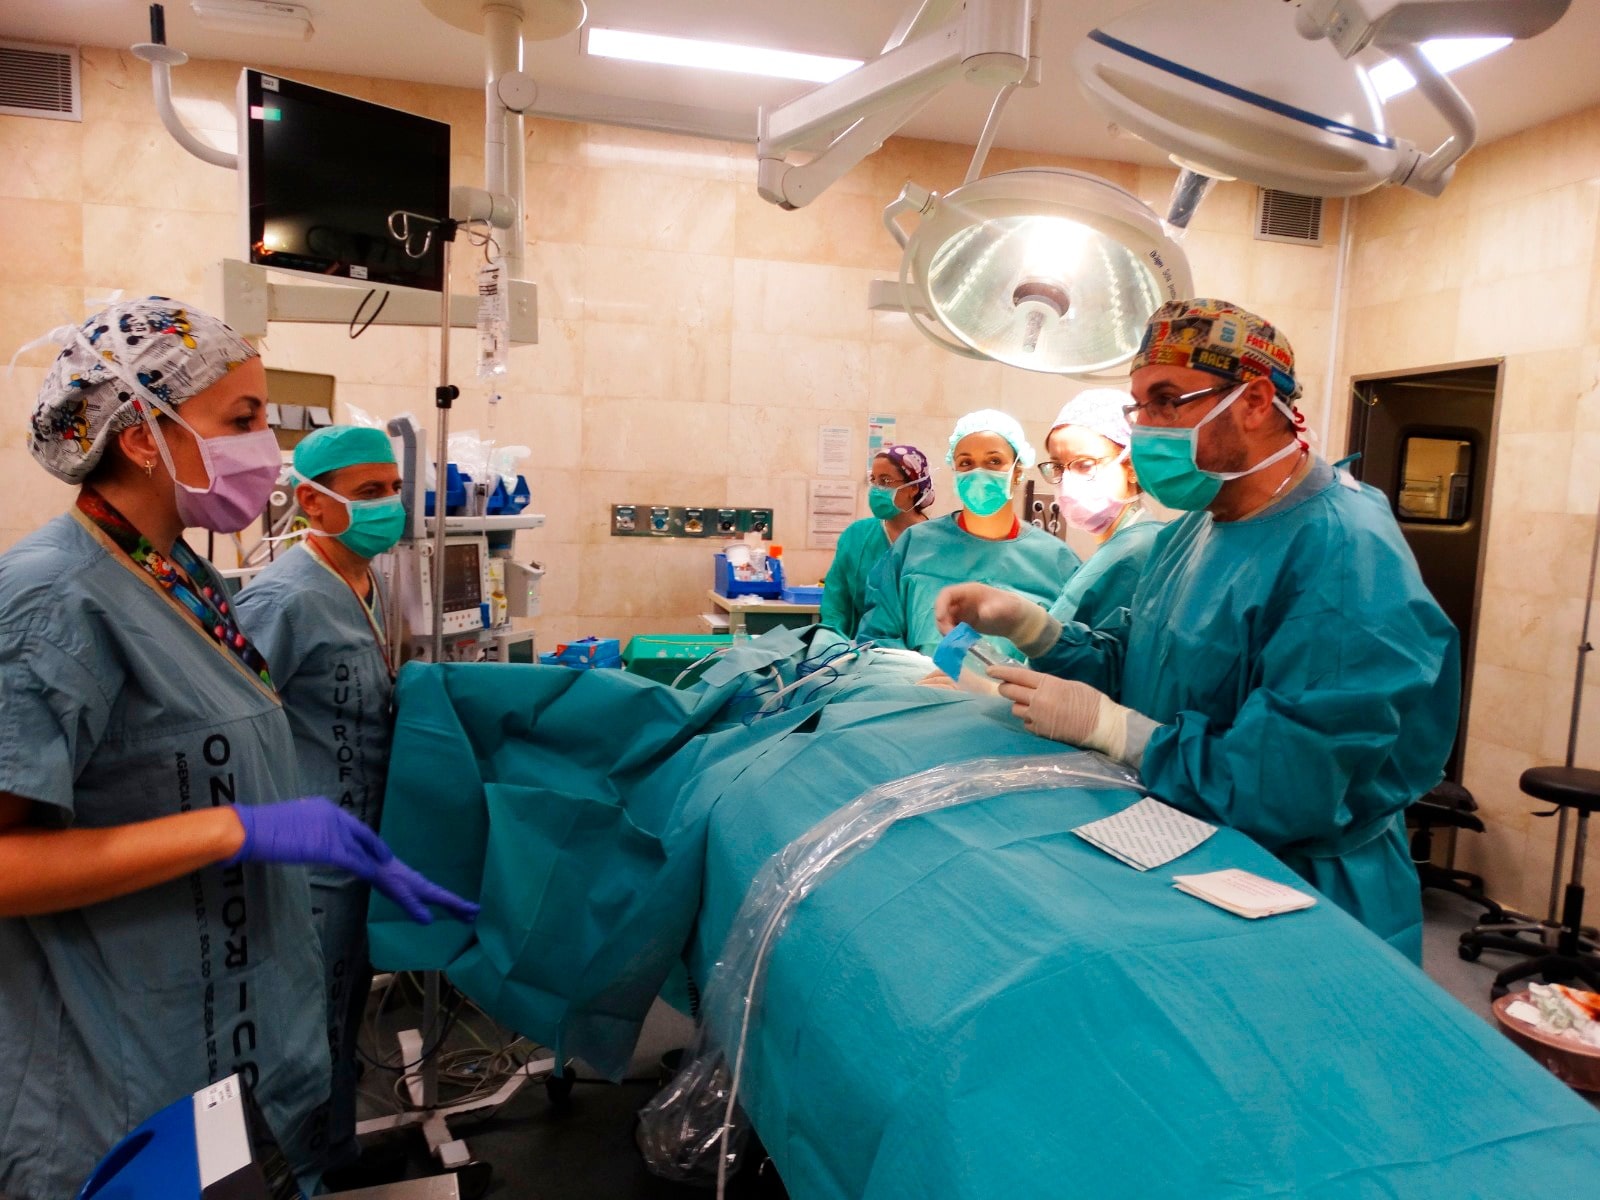 Nueva técnica de reconstrucción mamaria basada en implantar una prótesis prepectoral